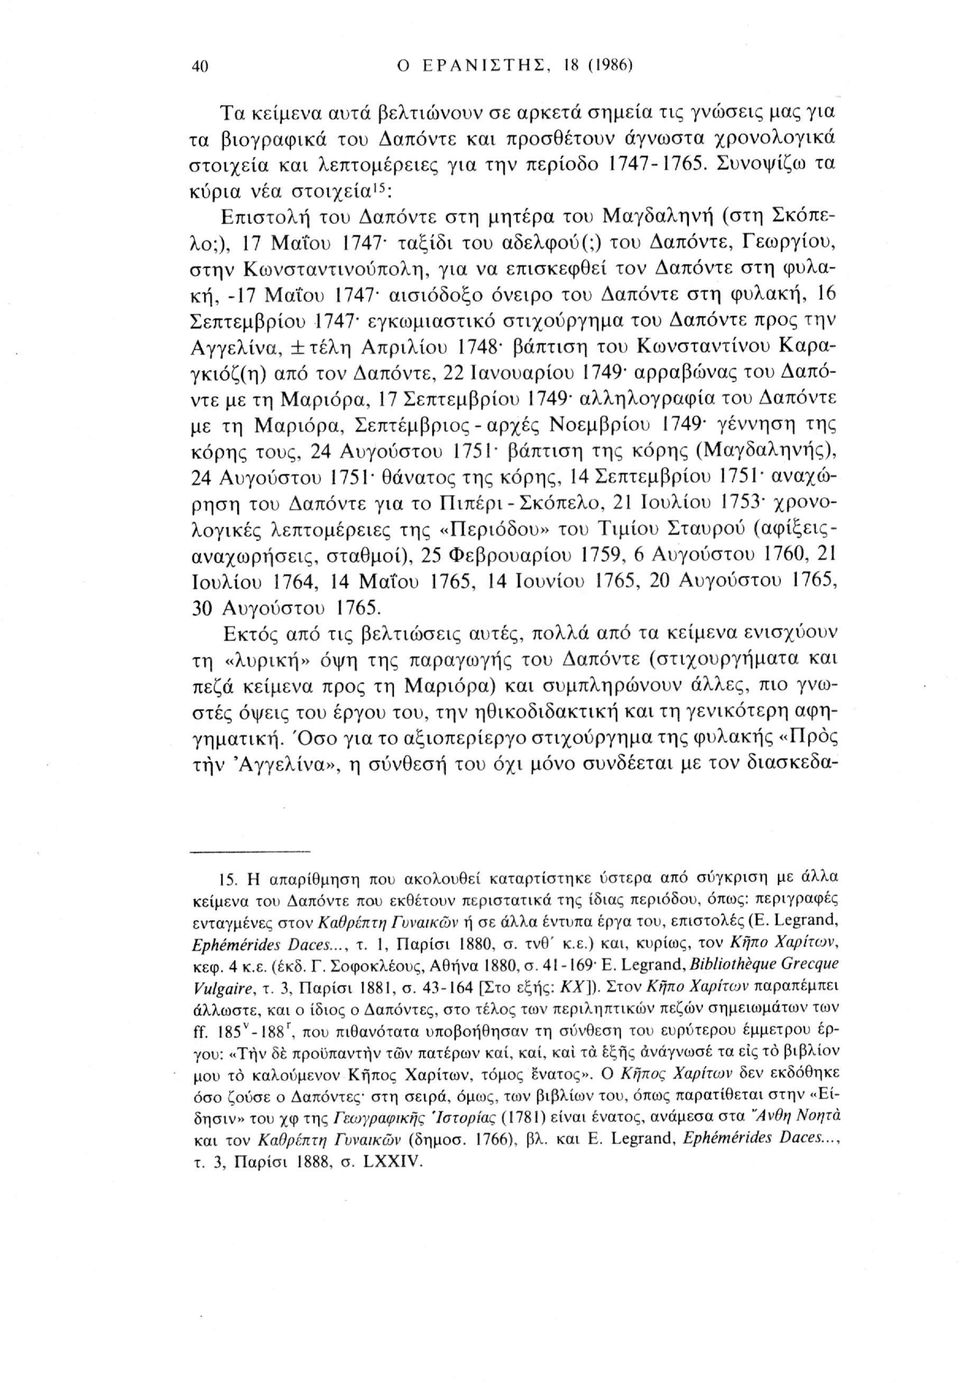 Συνοψίζω τα κύρια νέα στοιχεία 15 : Επιστολή του Δαπόντε στη μητέρα του Μαγδαληνή (στη Σκόπελο;), 17 Μαΐου 1747' ταξίδι του αδελφού(;) του Δαπόντε, Γεωργίου, στην Κωνσταντινούπολη, για να επισκεφθεί